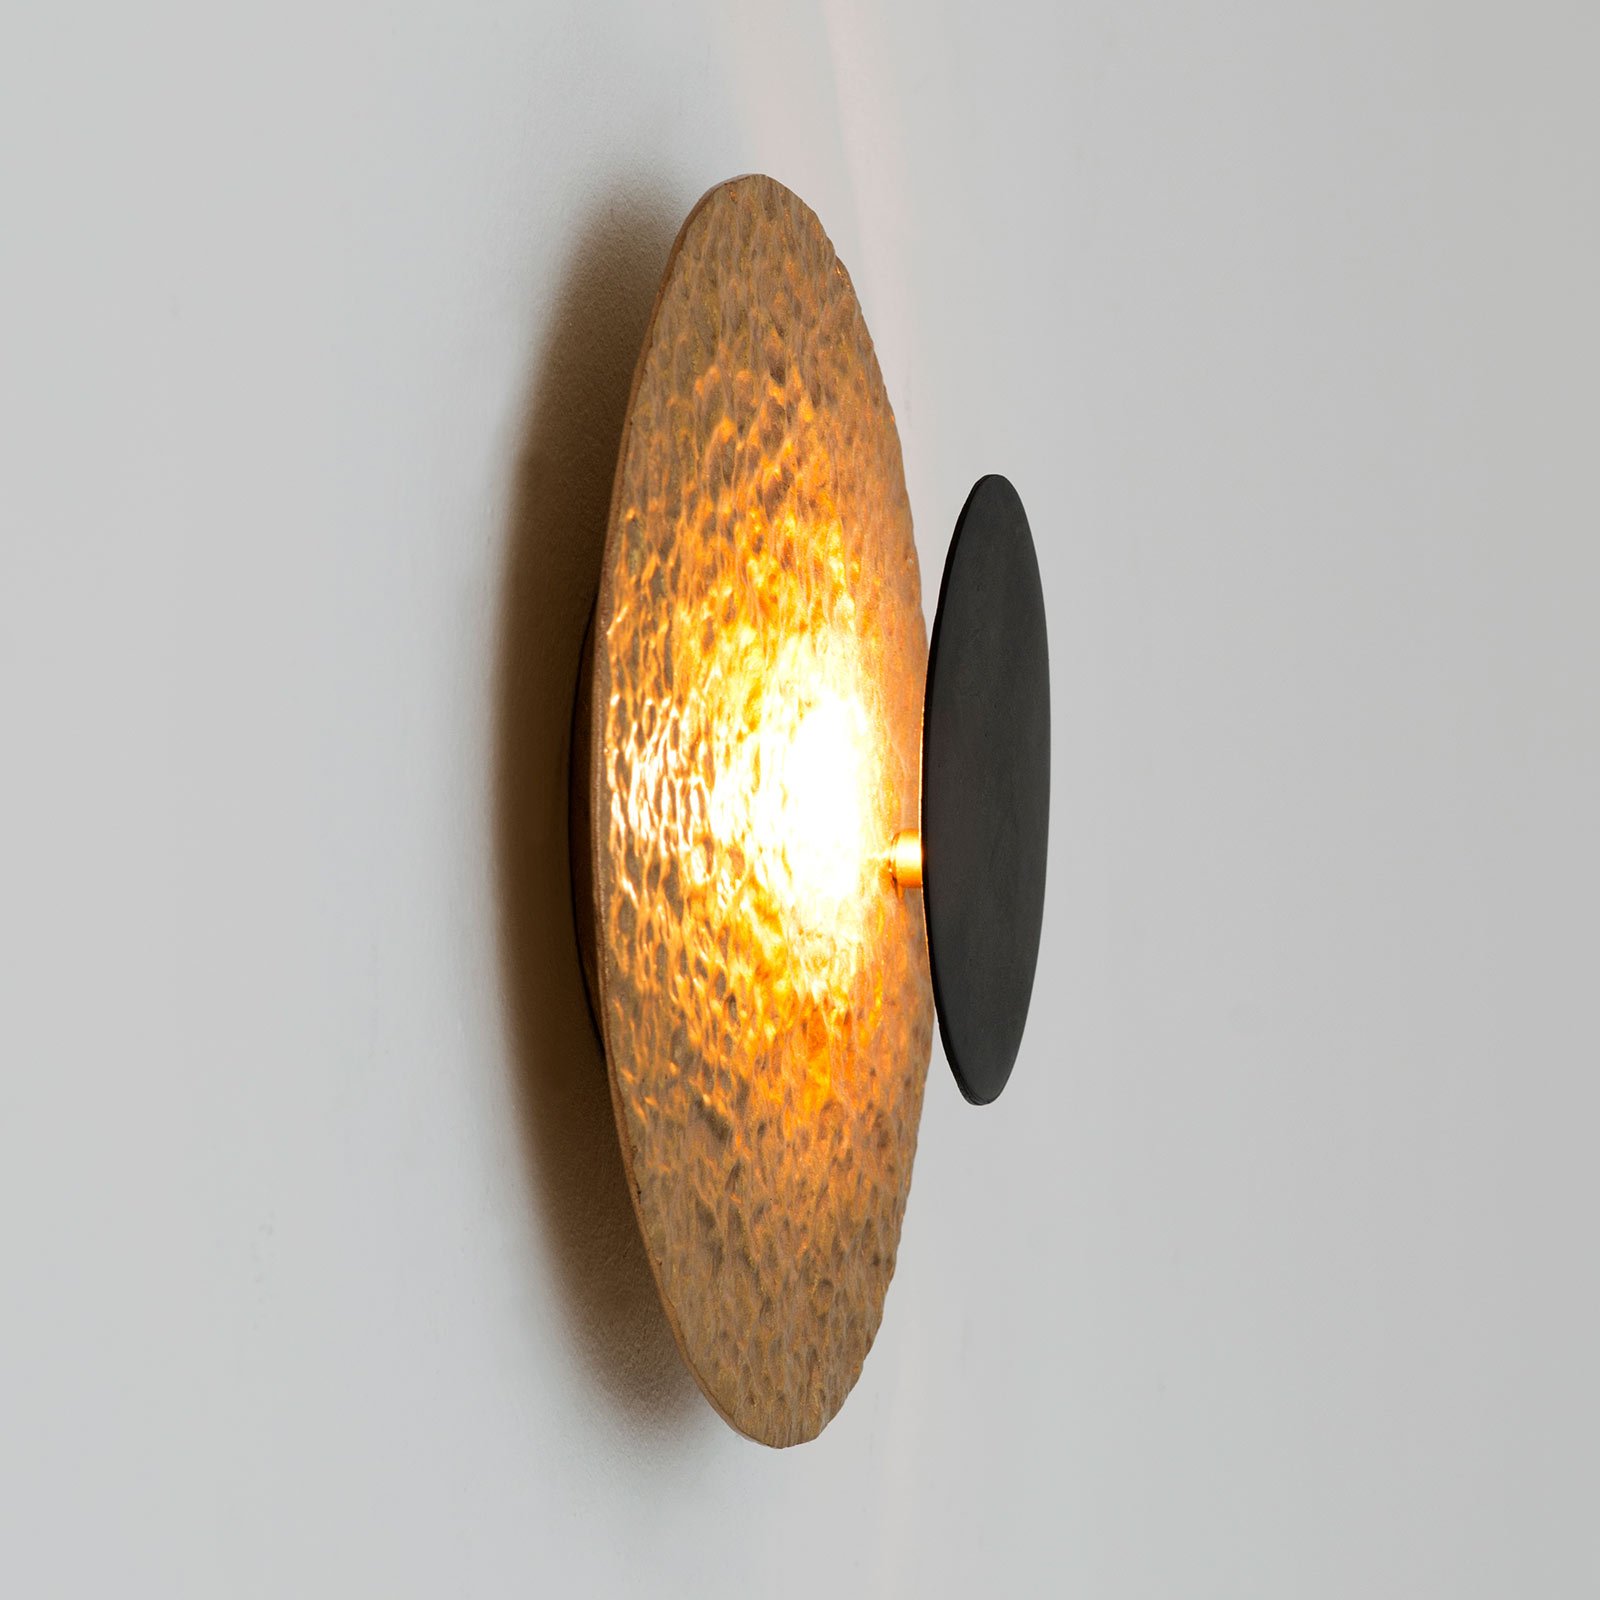 LED nástěnné světlo Infinity ve zlaté, Ø 20 cm